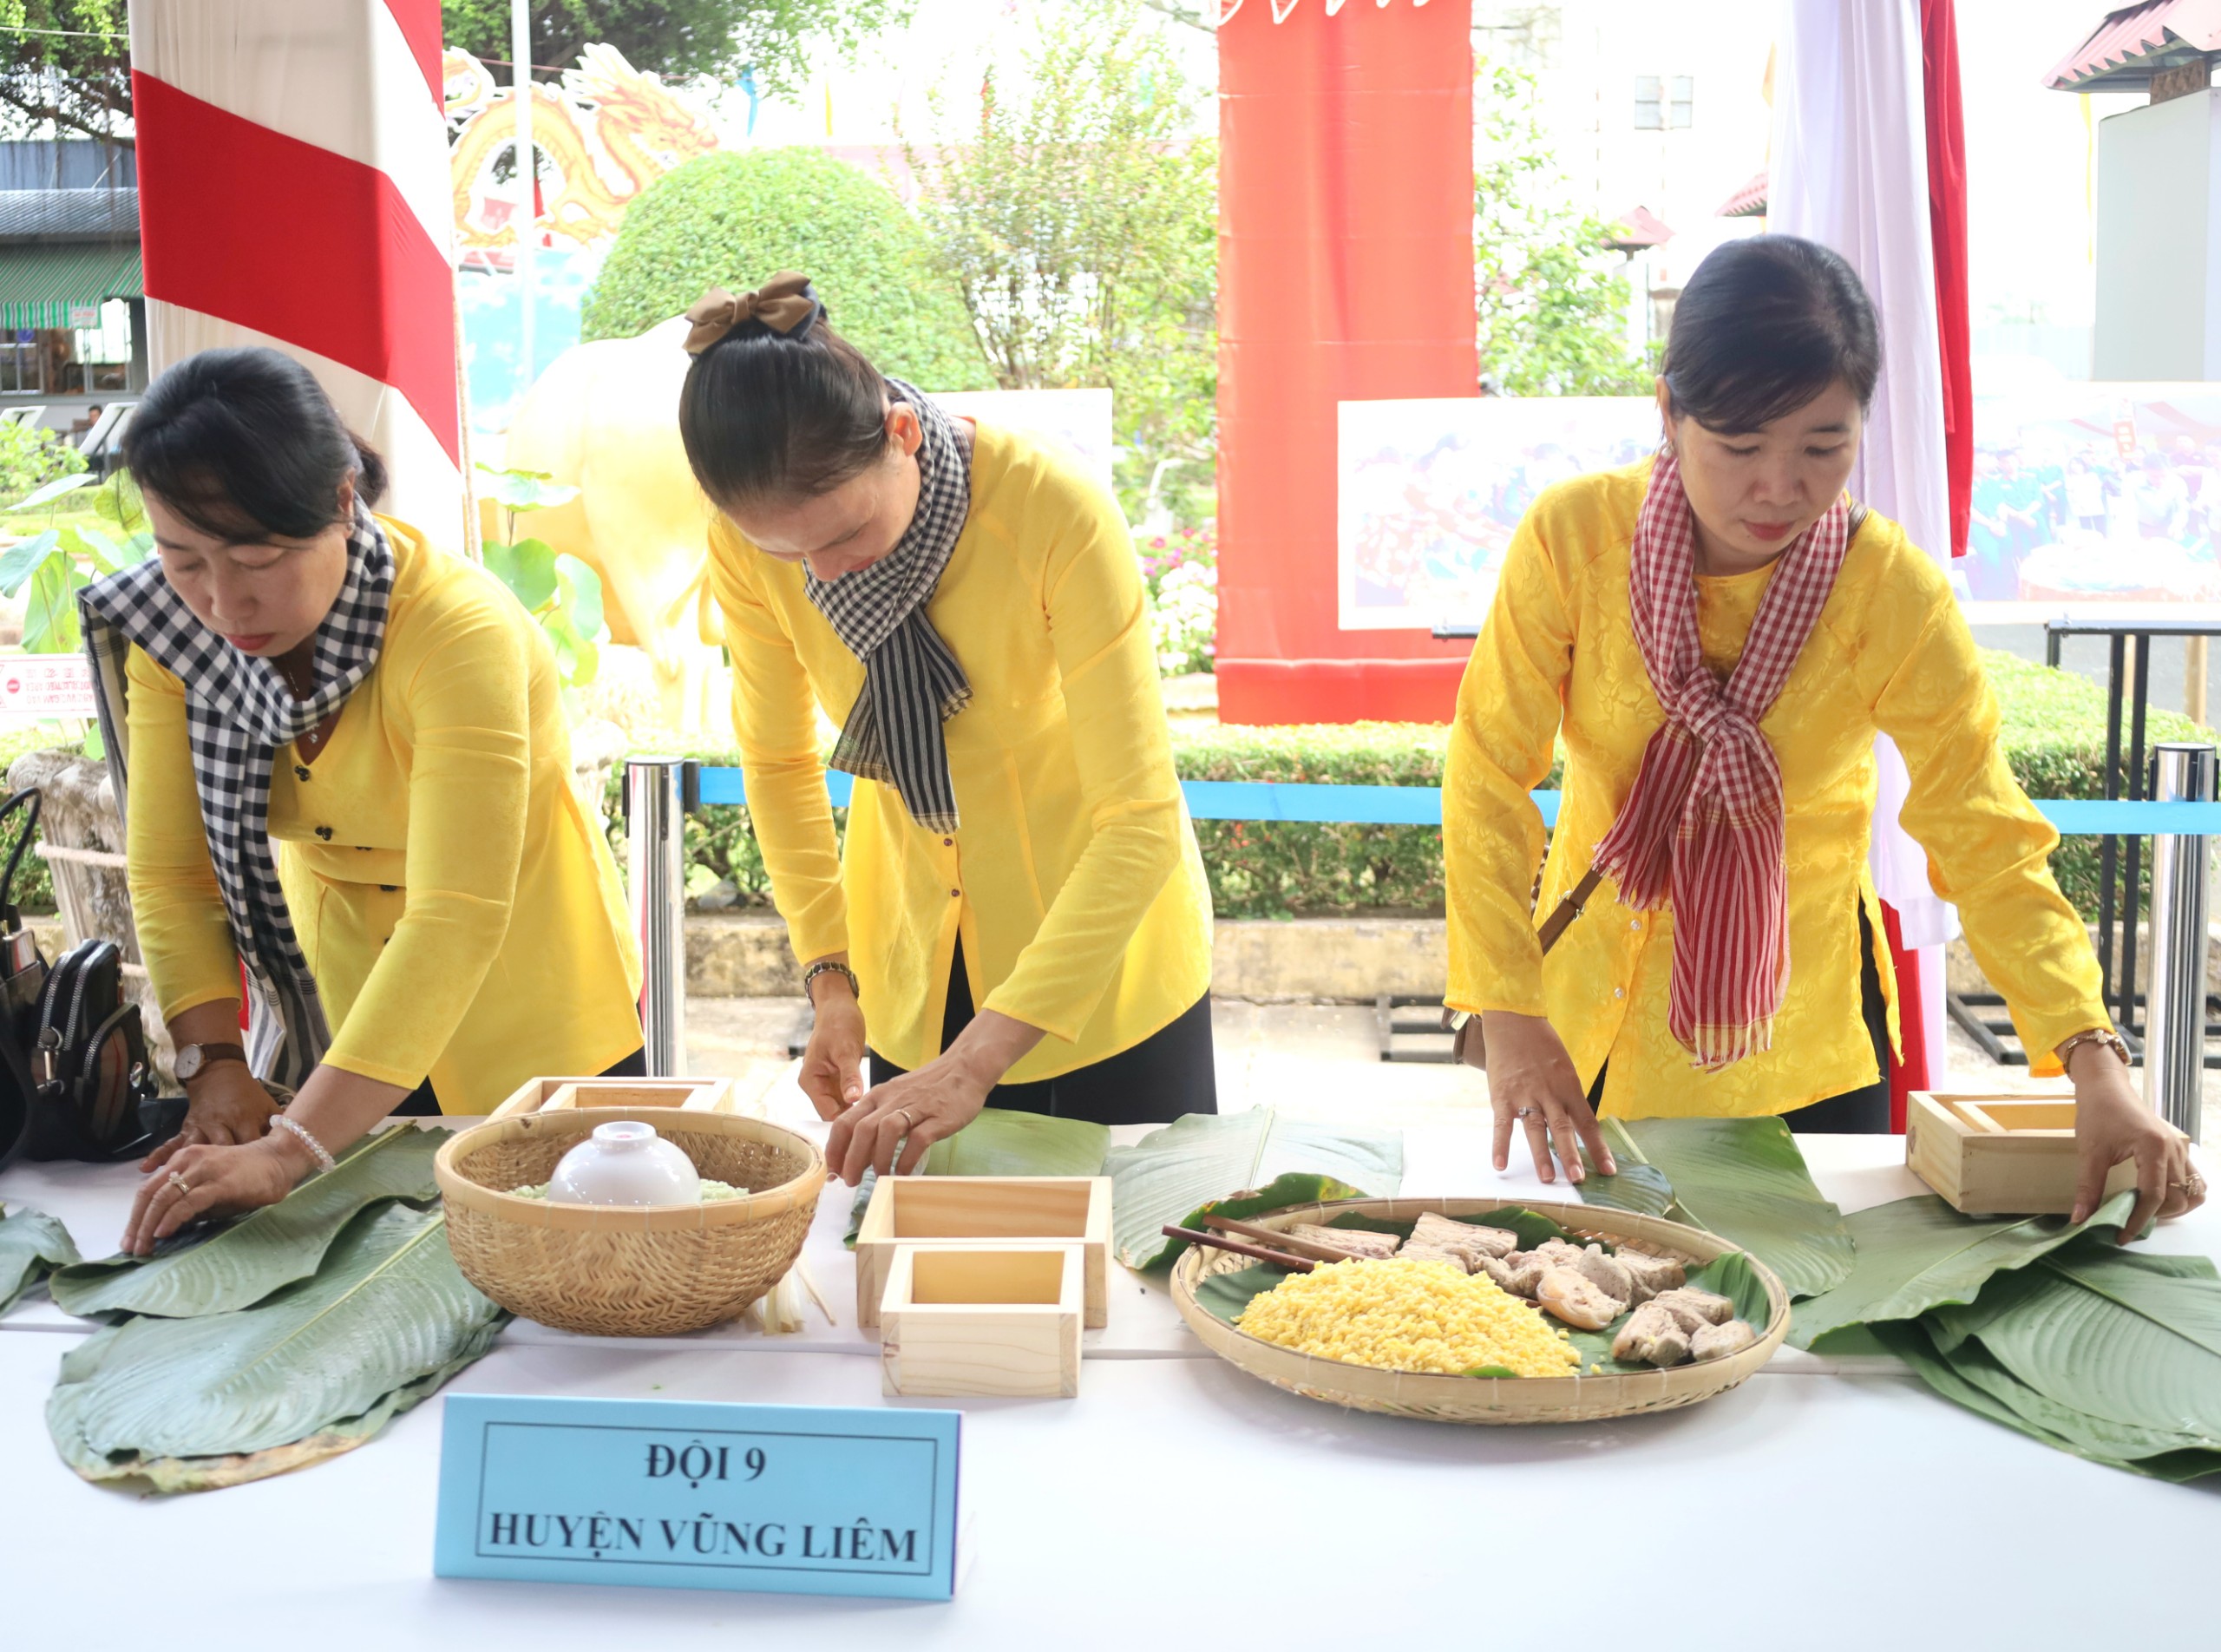 Đội huyện Vũng Liêm tham gia gói bánh chưng.